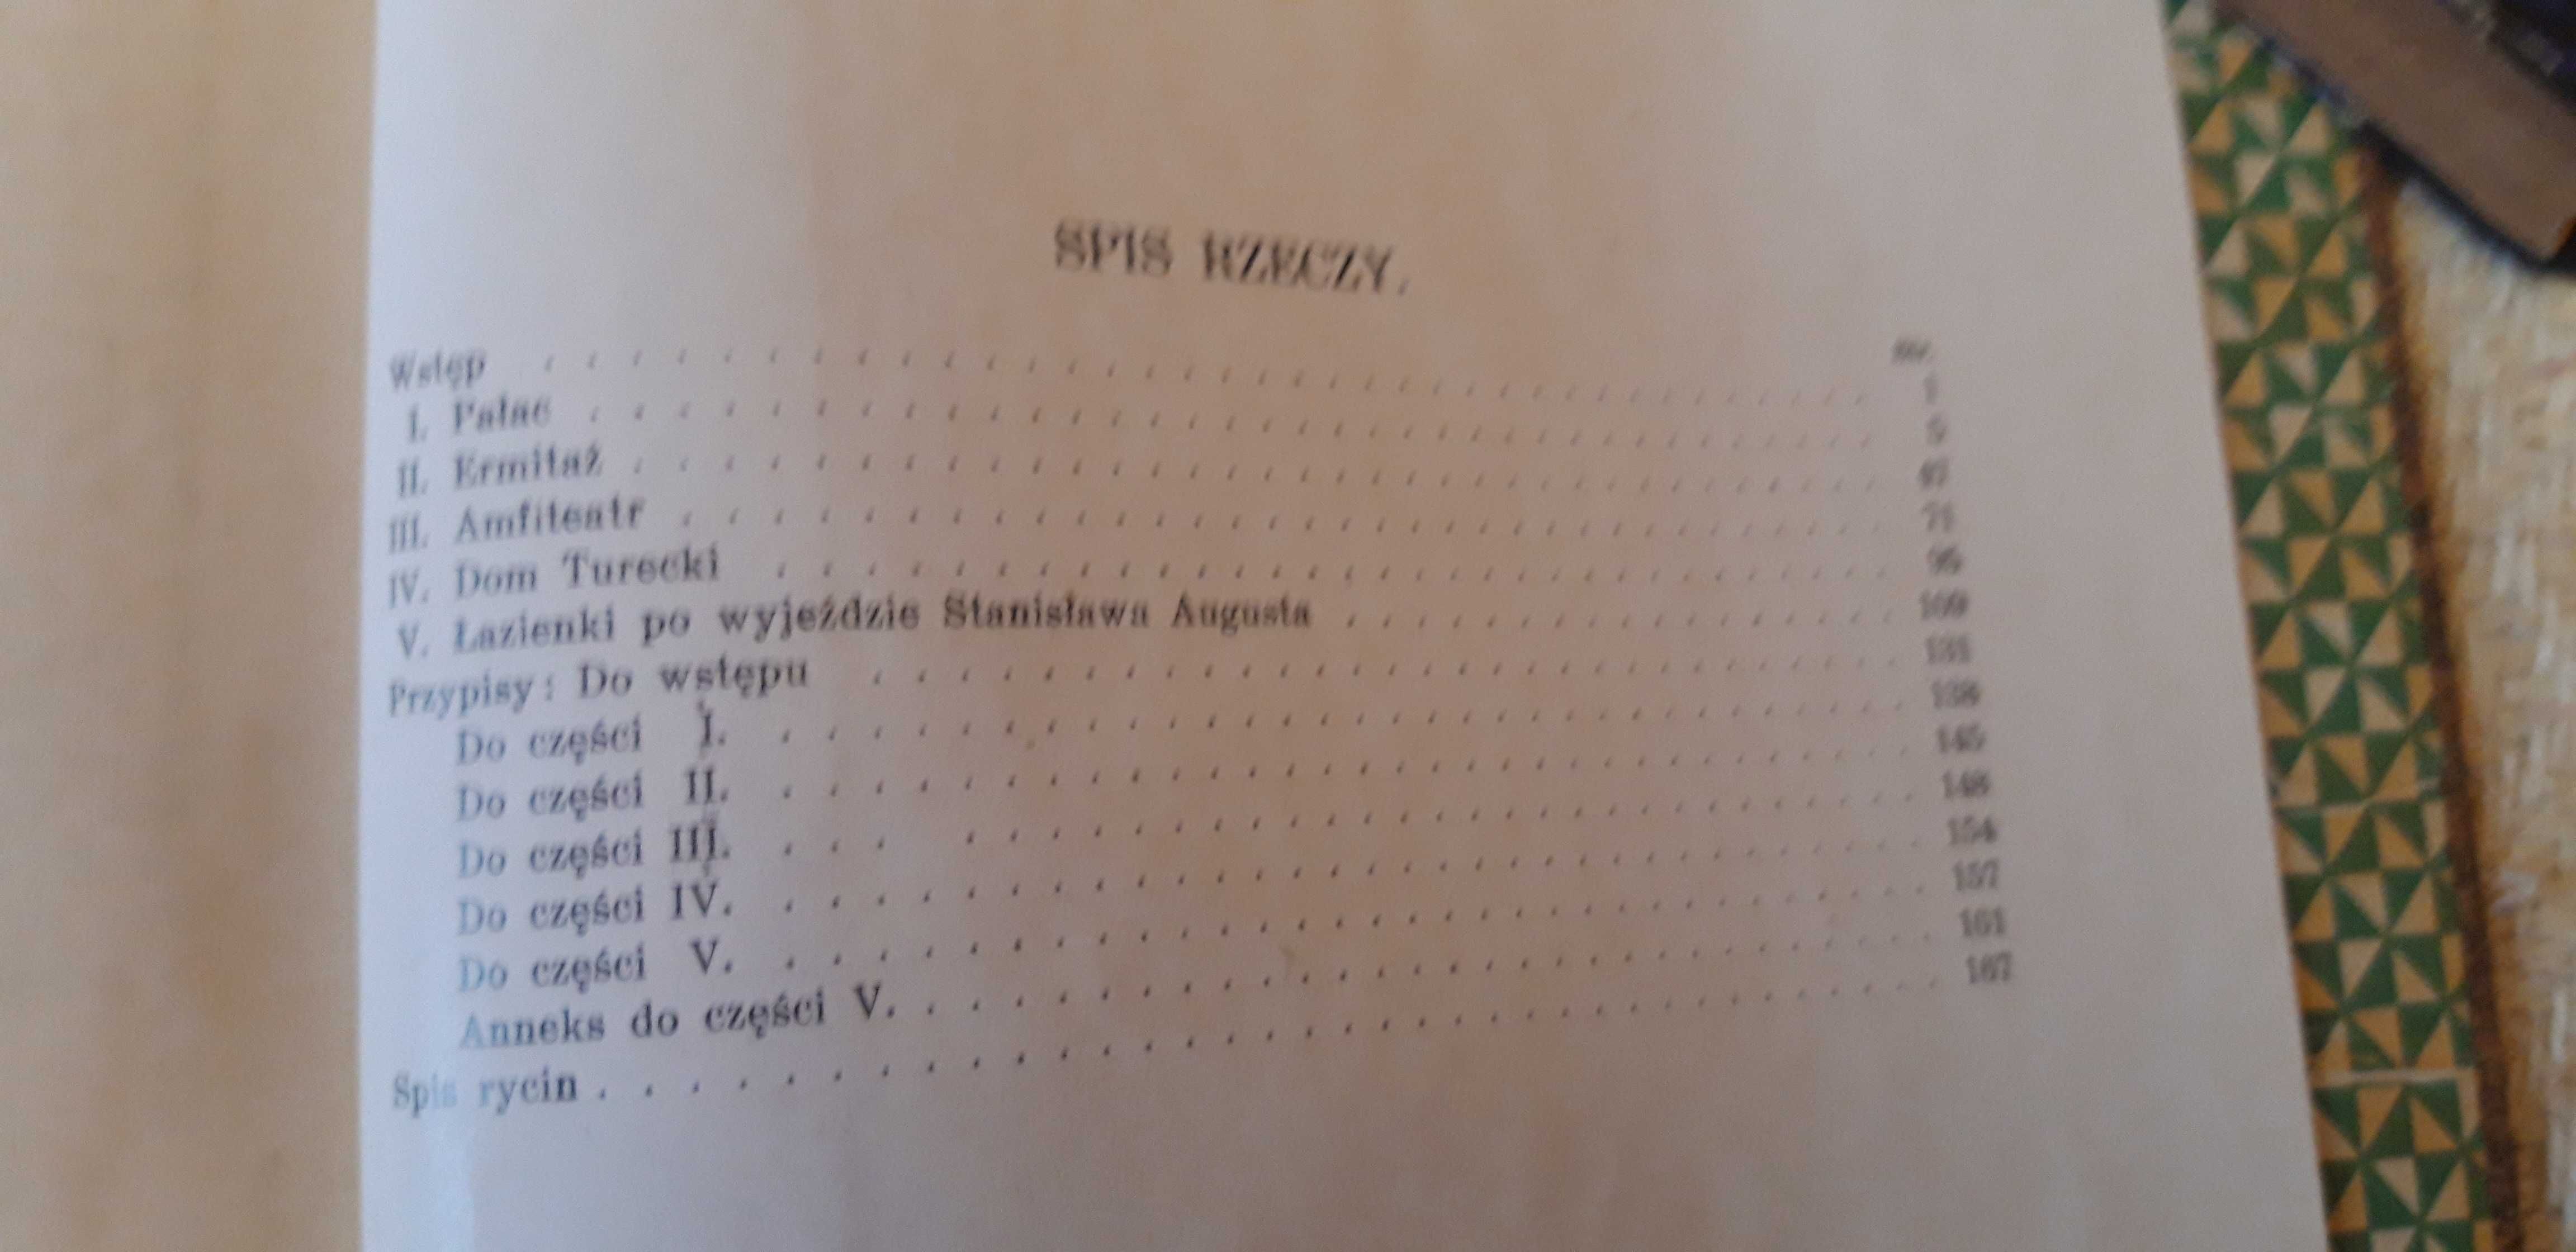 Pięć Studiów o Łazienkach - Lwów1925ilustr.,cudo